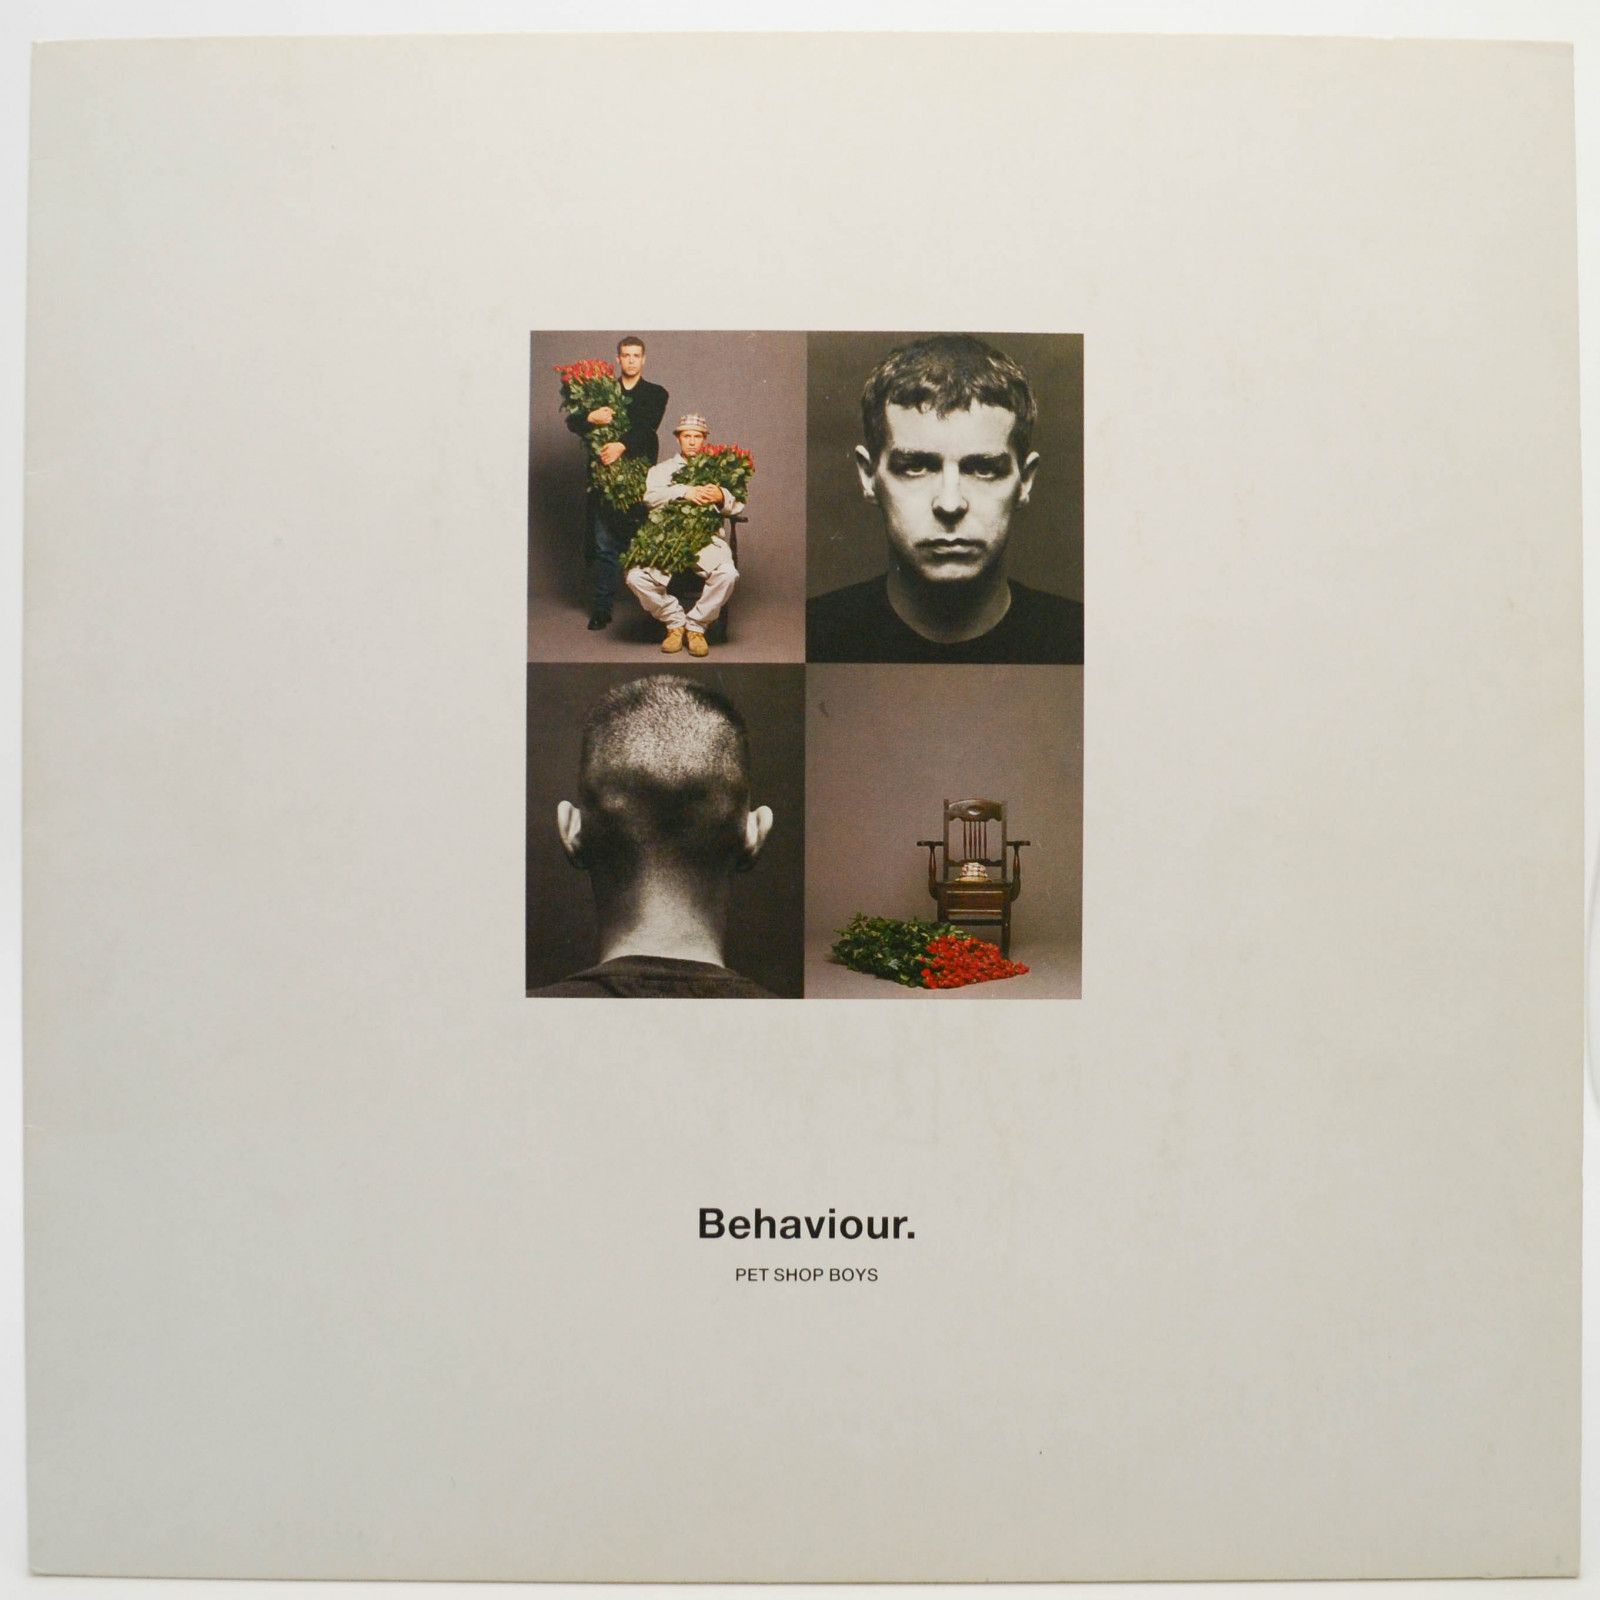 Pet Shop Boys — Behaviour, 1990